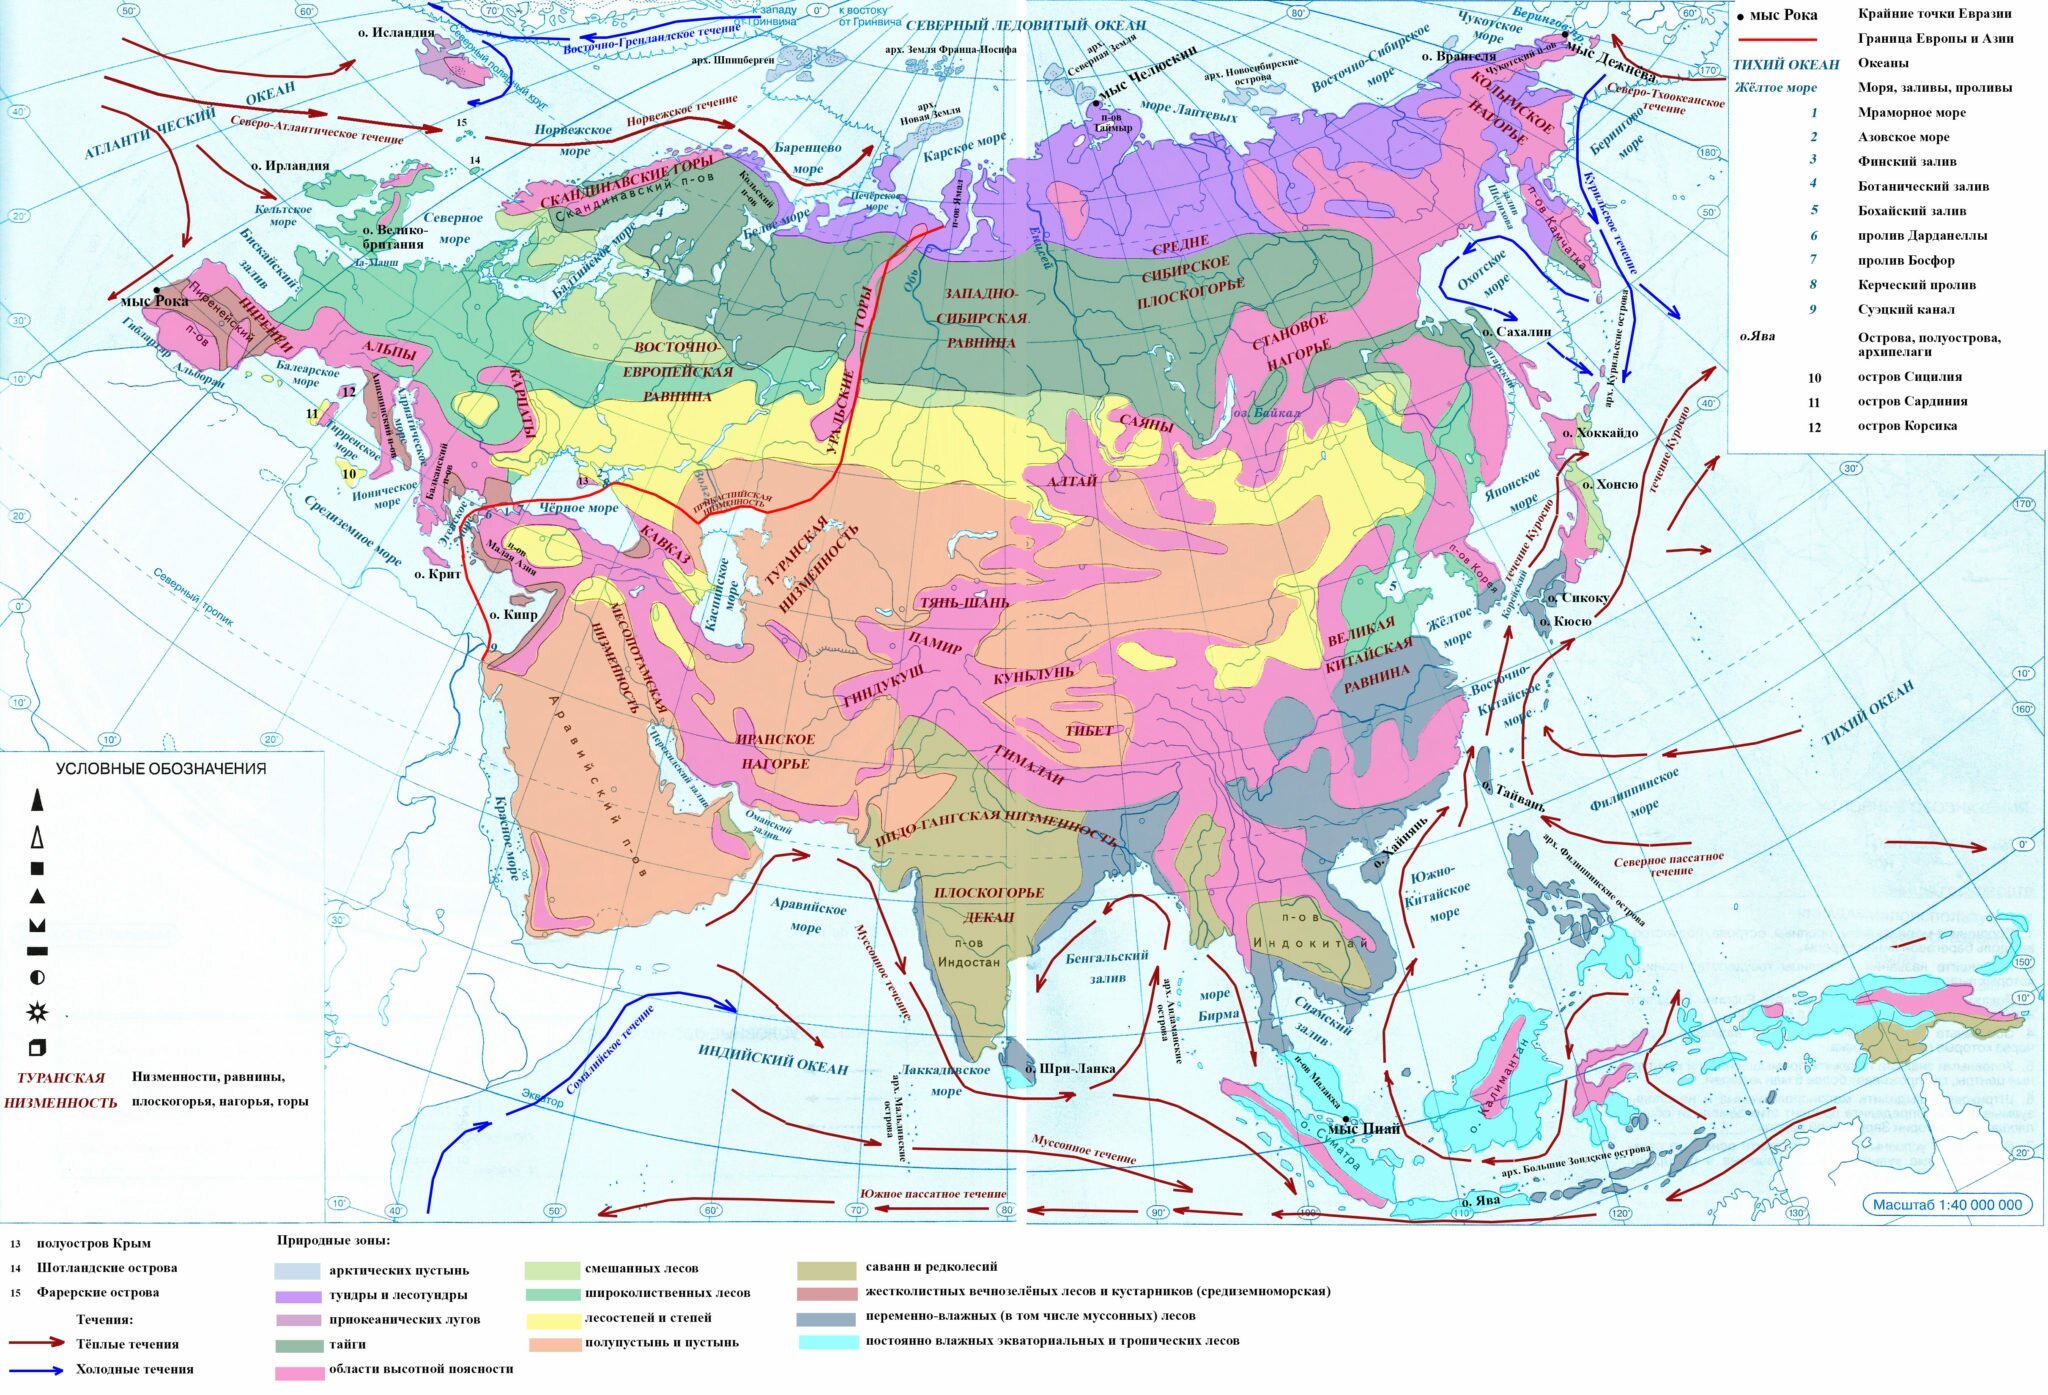 Полезные ископаемые Евразии. Полезные ископаемые Евразии на карте. Карта полезных ископаемых Евразии.